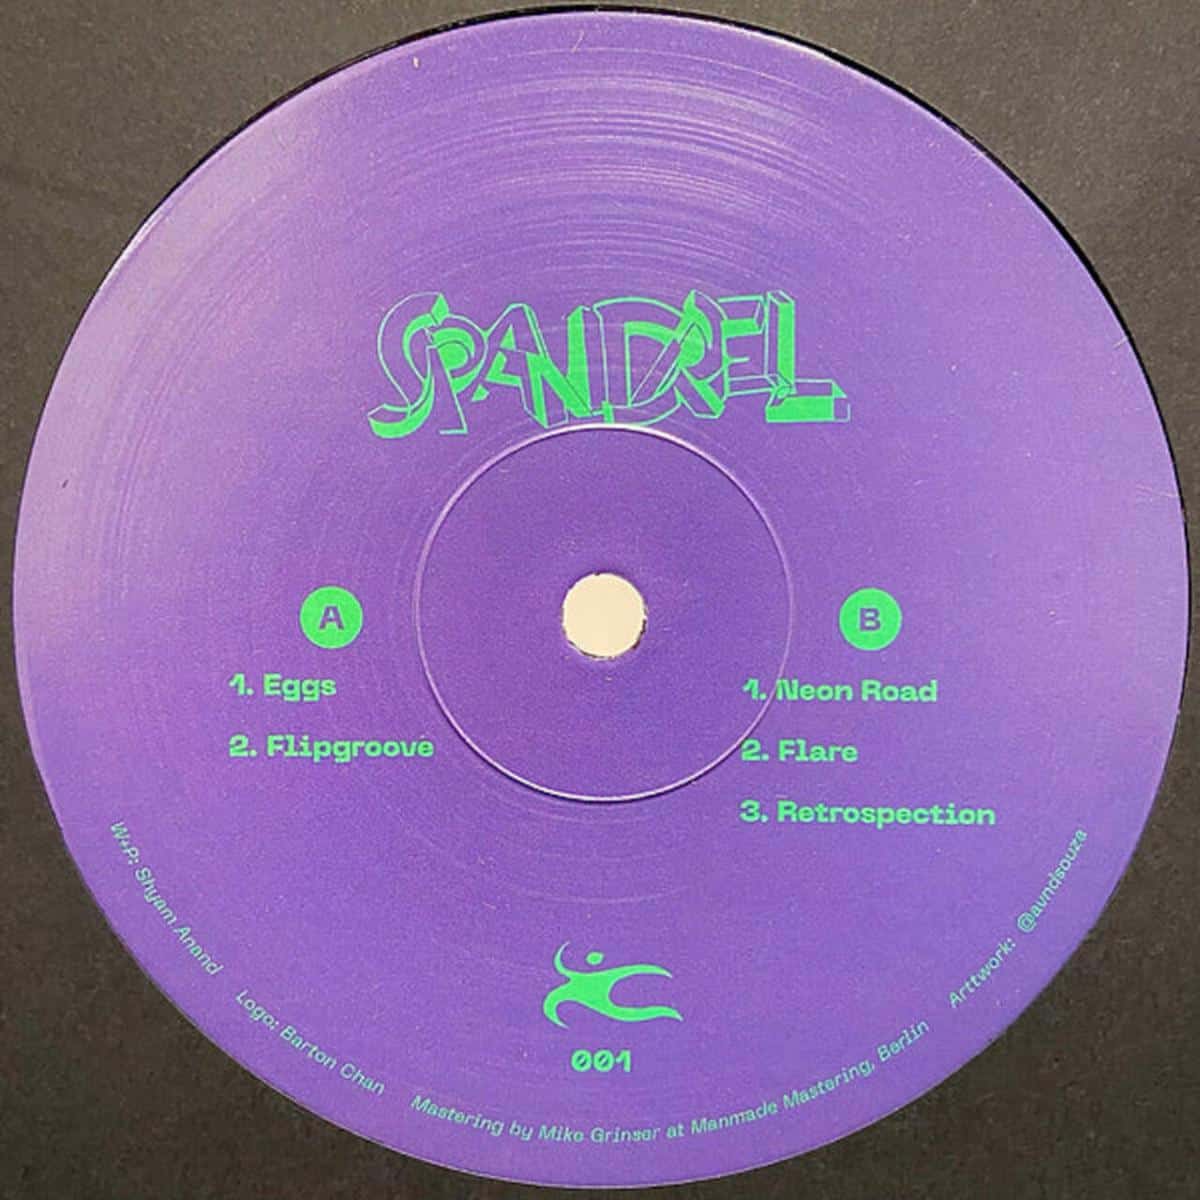 Download Spandrel LP Pt. 1 on Electrobuzz